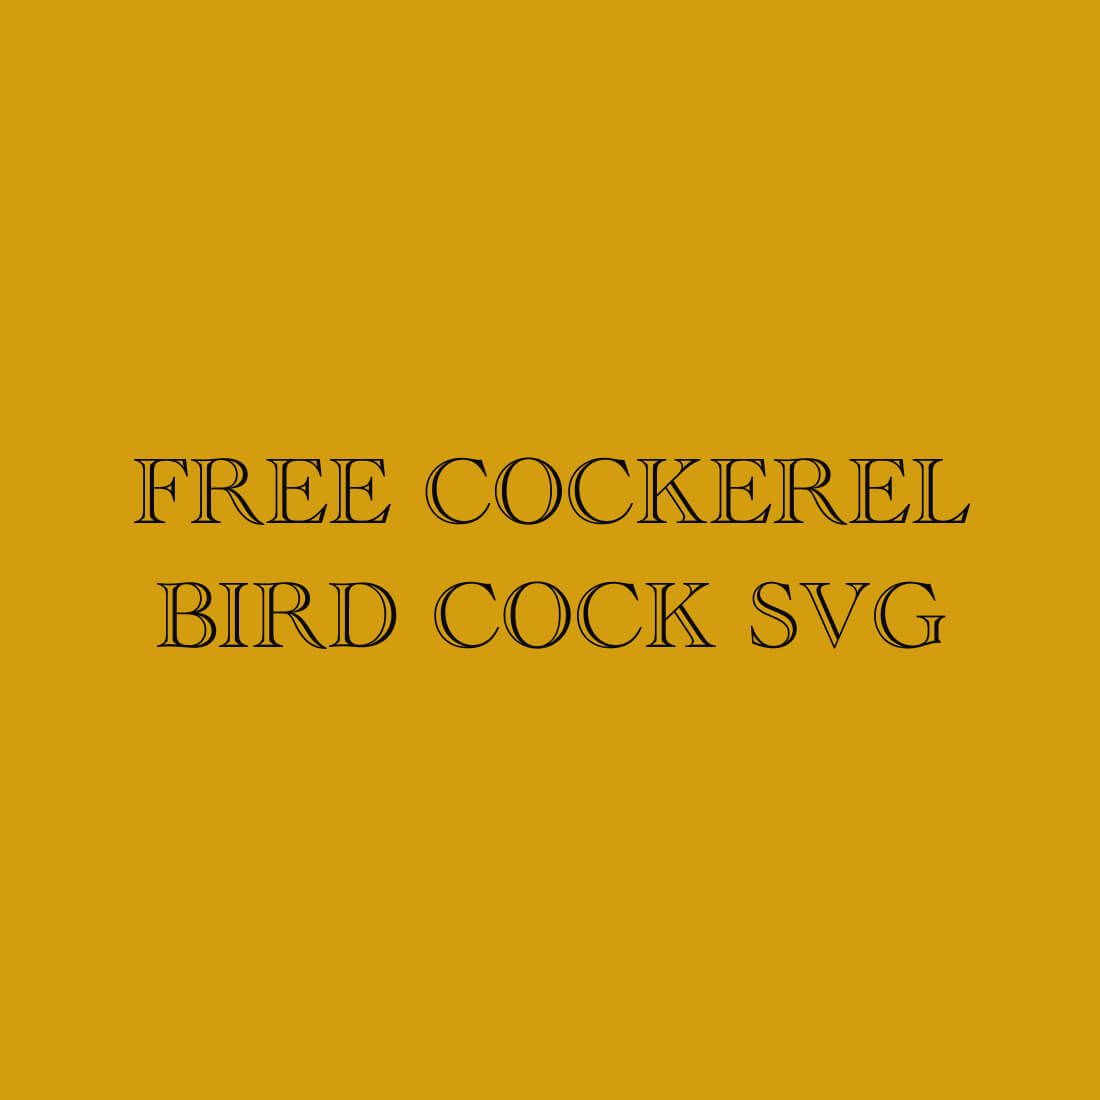 Free Cockerel Bird Cock SVG preview.